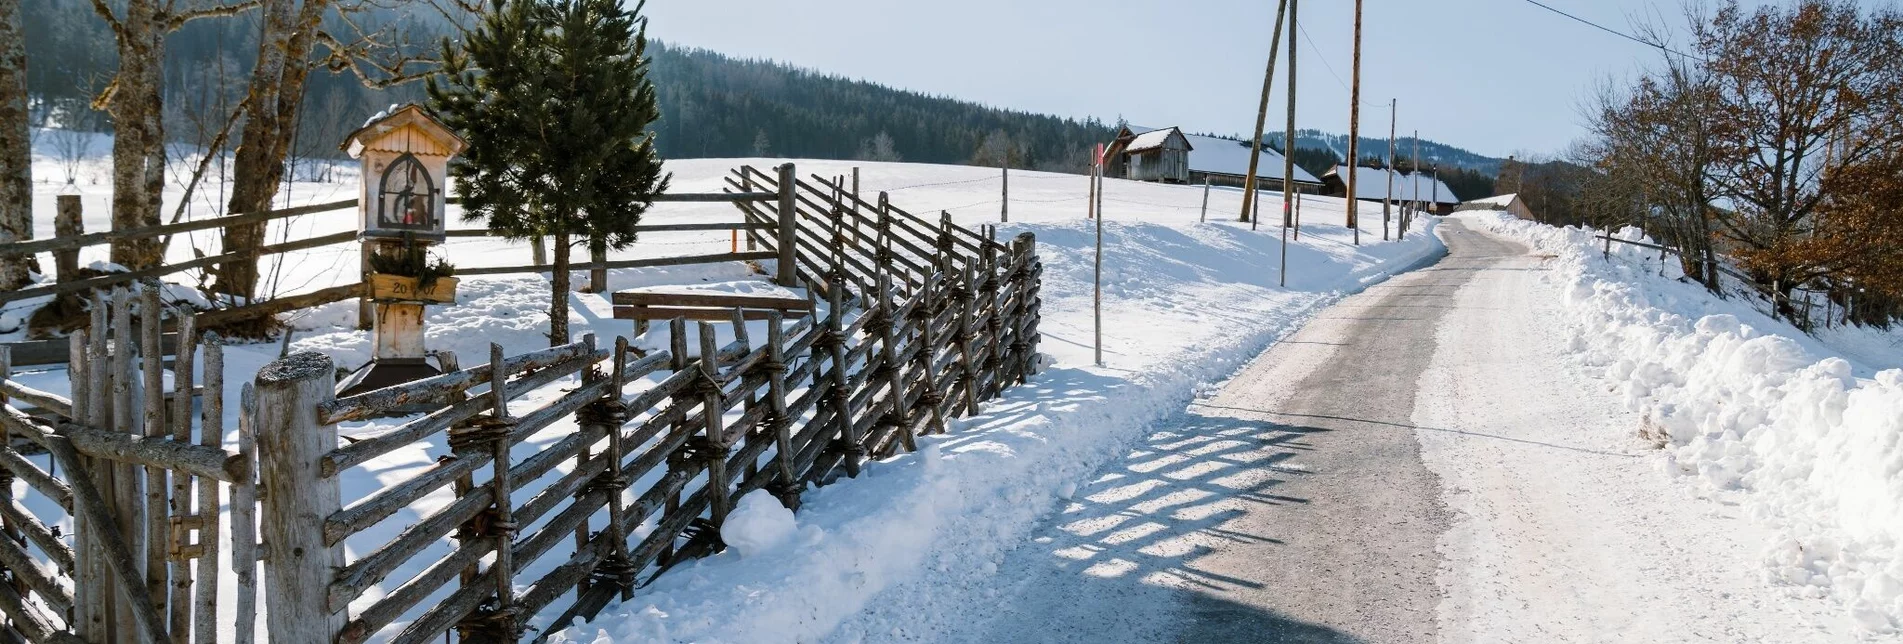 Winterwandern Winterwandern - Moosberg Runde - Touren-Impression #1 | © Erlebnisregion Schladming-Dachstein